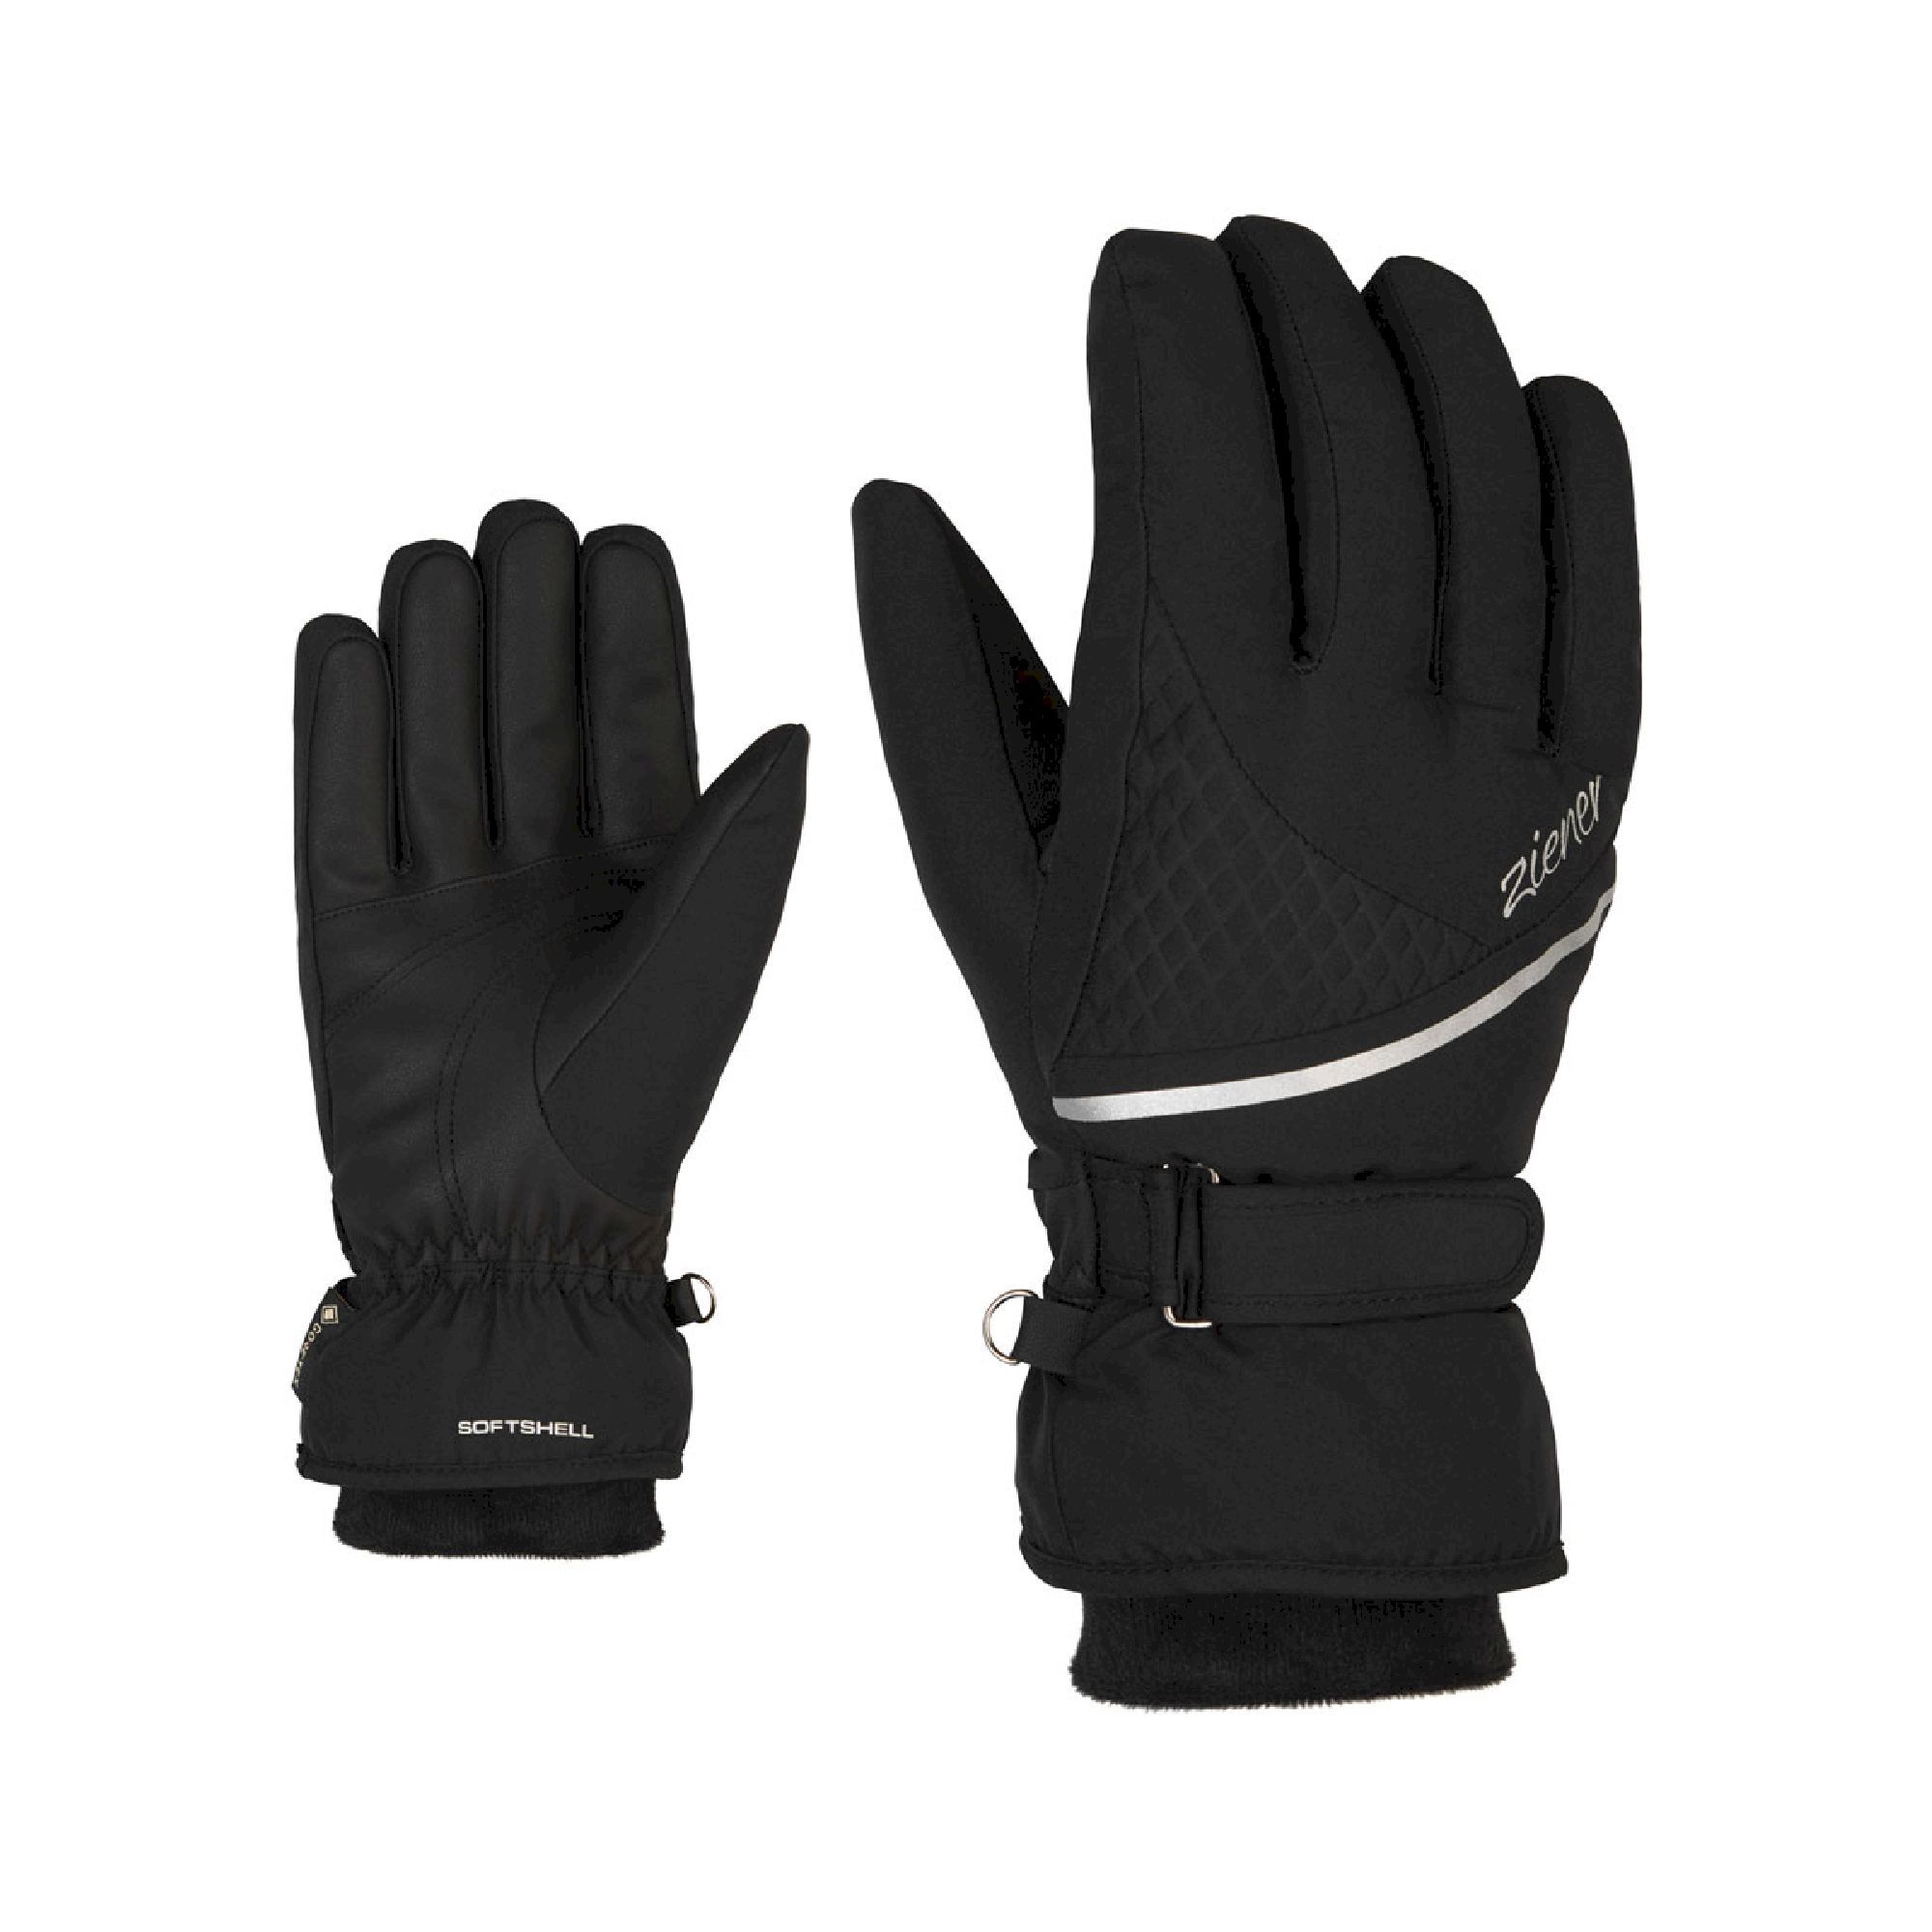 Ziener Kiana GTX + Gore Plus Warm - Ski gloves - Women's